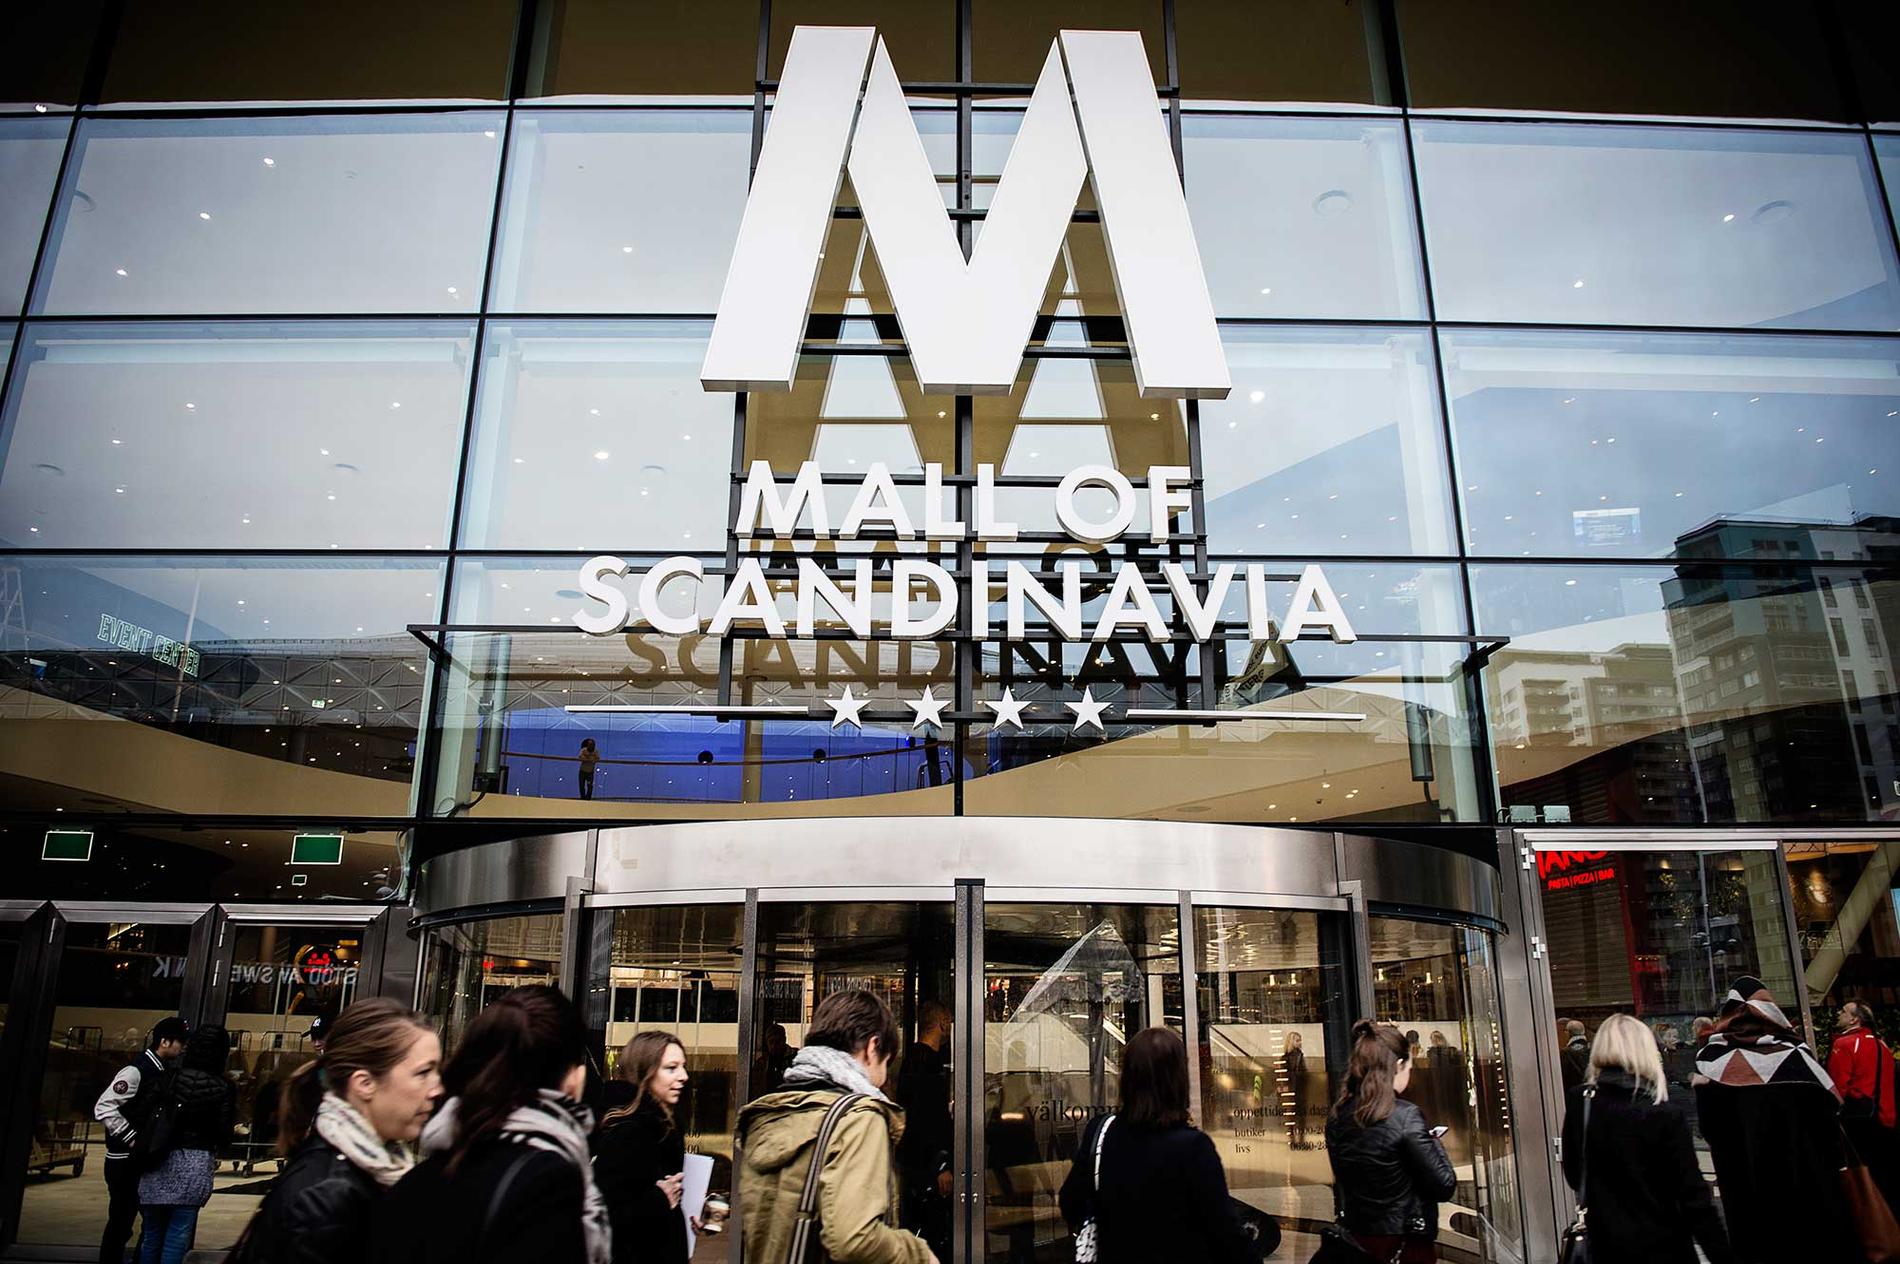 I kväll kan TV-programmet Uppdrag Granskning avslöja omfattande fusk vid bygget av jättegallerian Mall of Scandinavia.